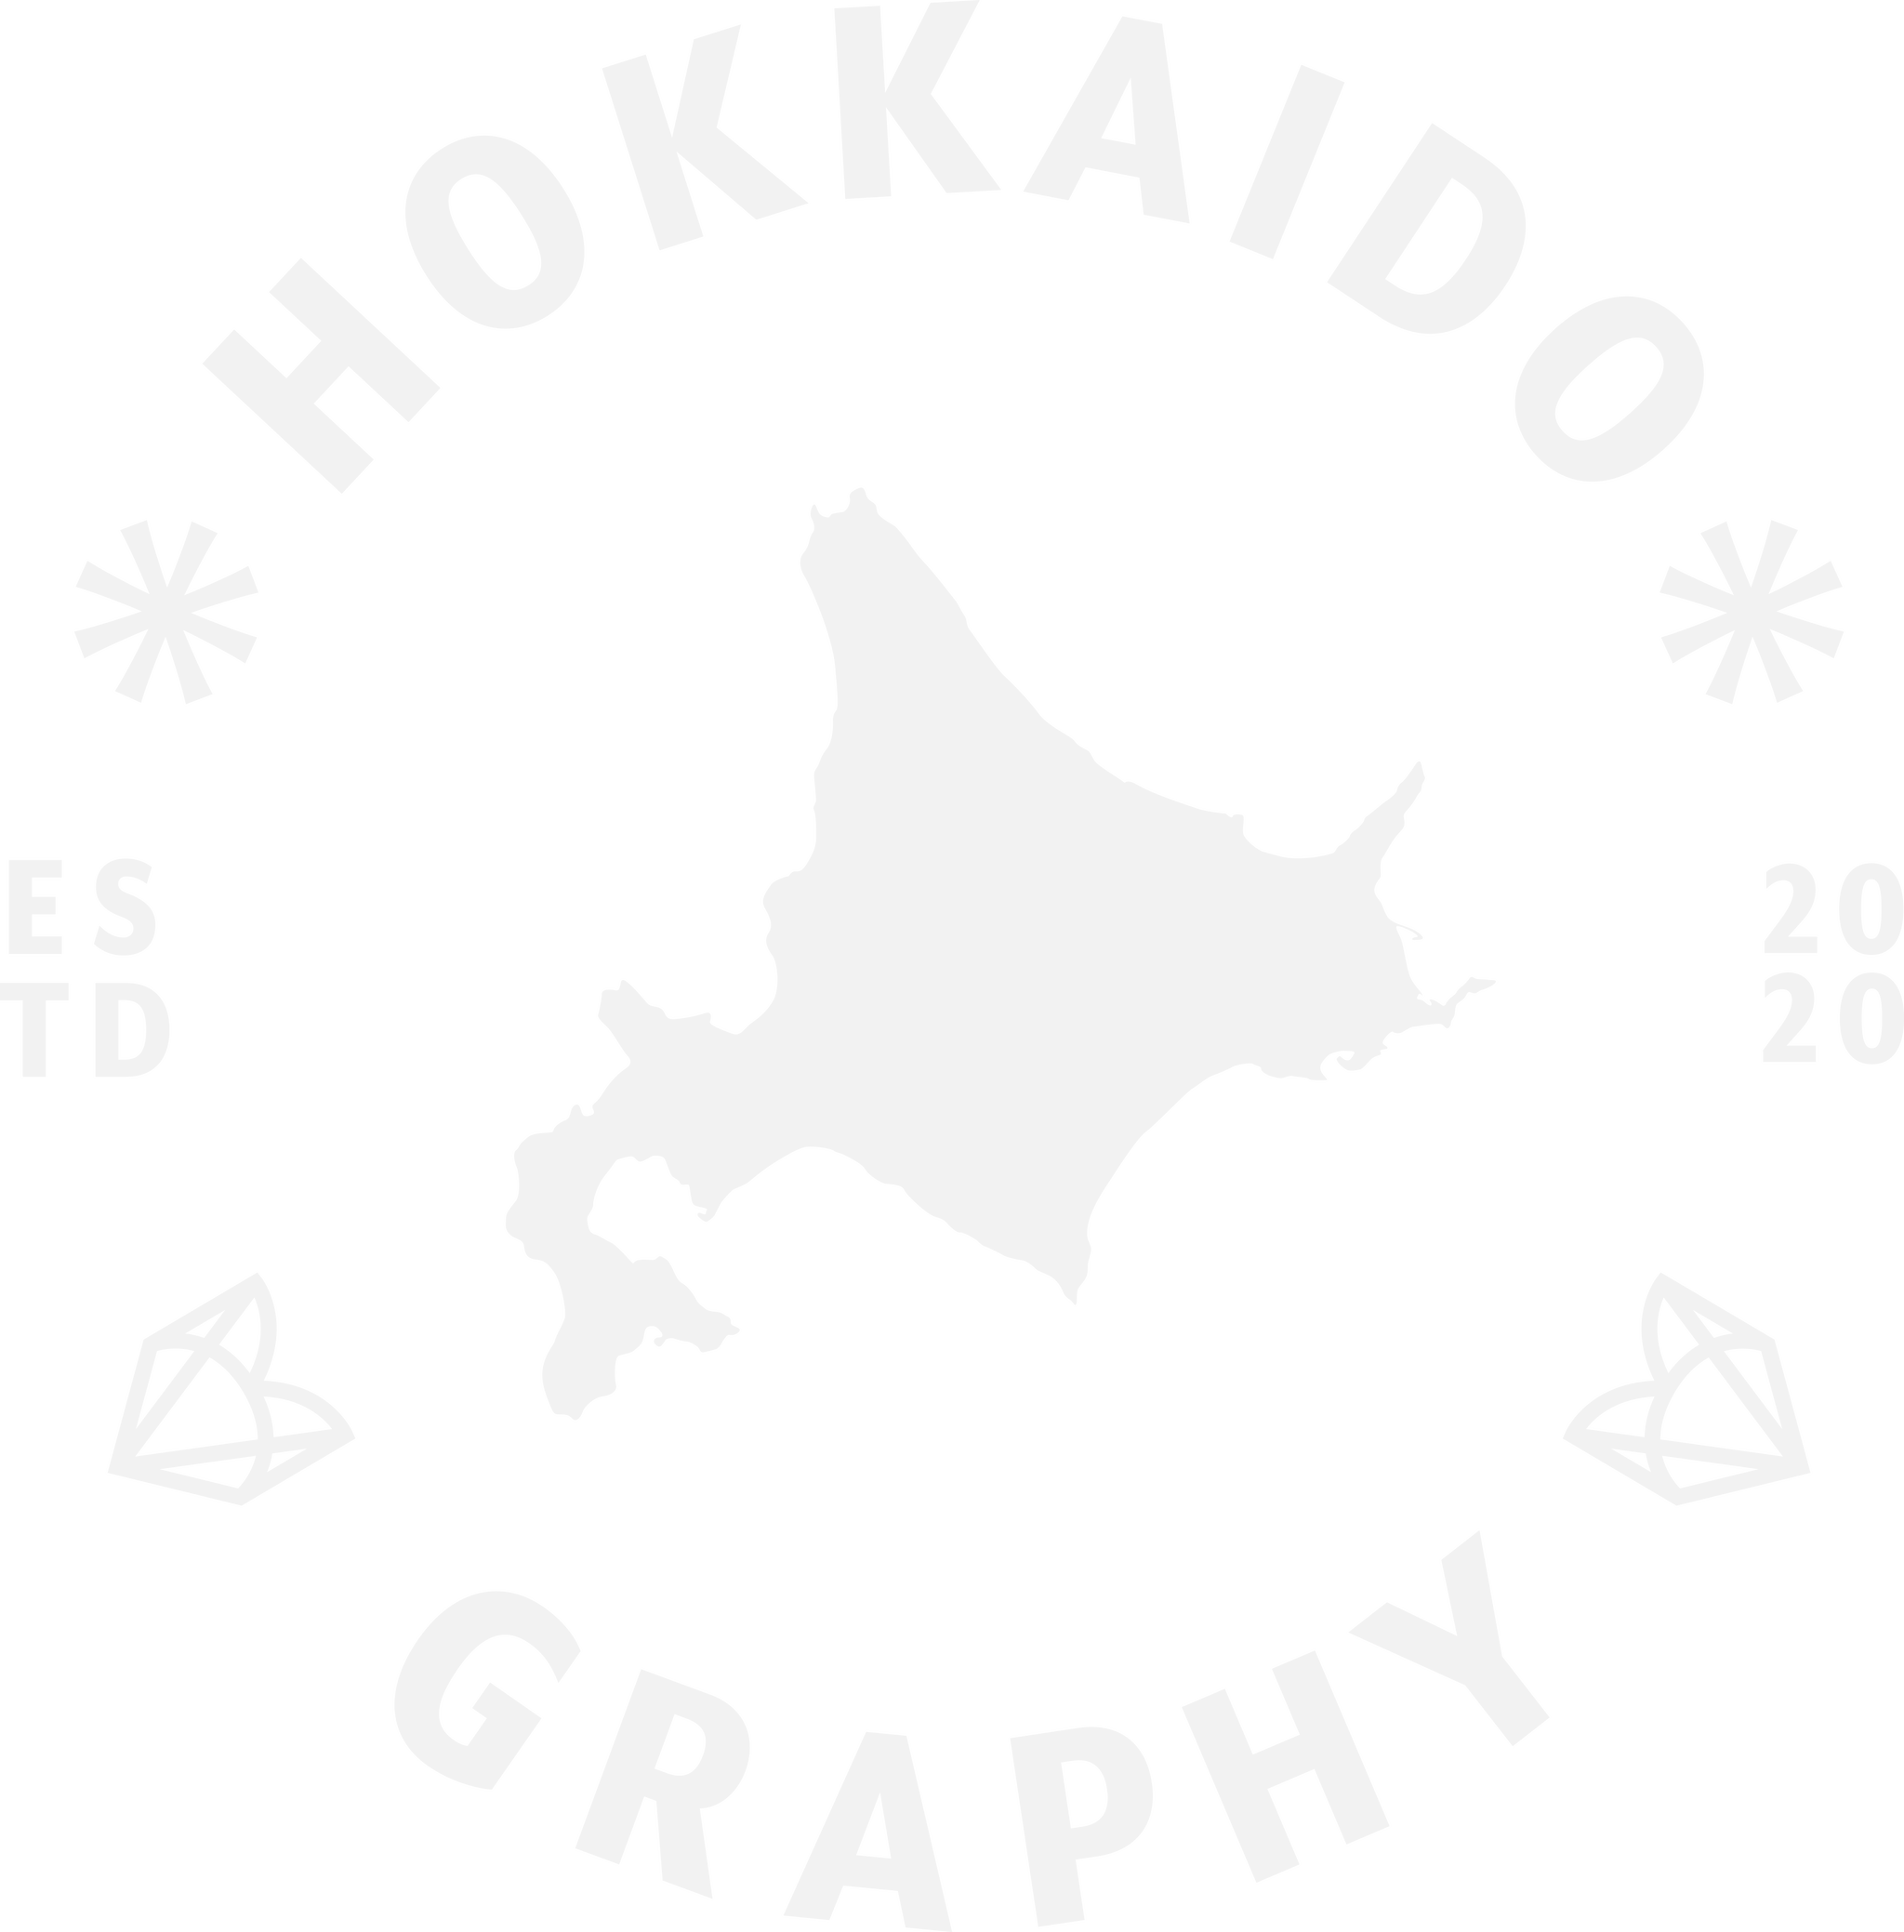 Hokkaido Graphy